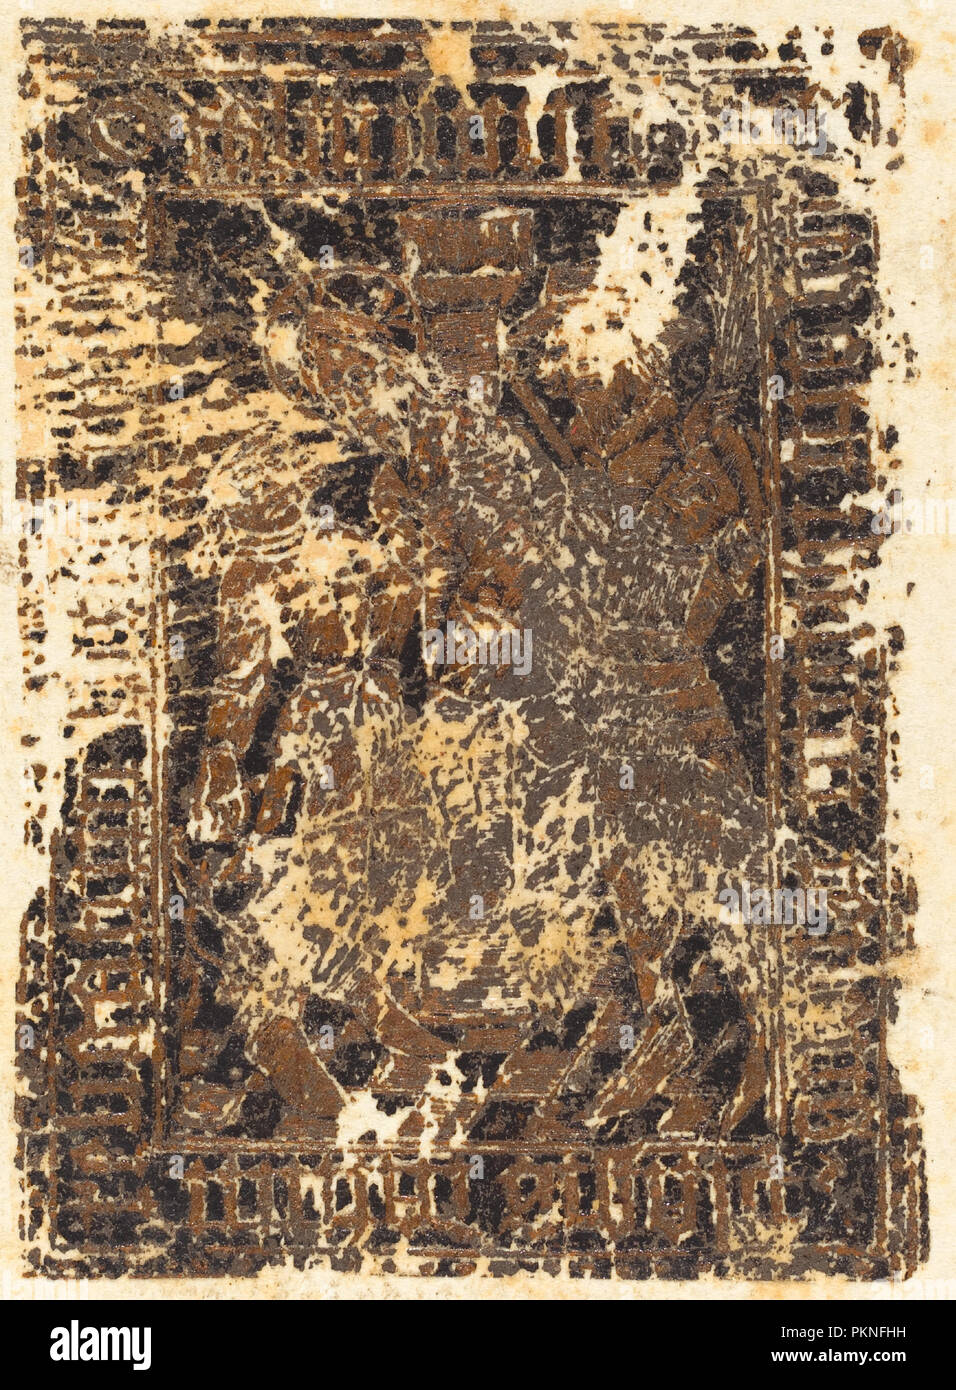 La flagellation du Christ. En date du : probablement 1480. Dimensions : 5,8 x 4,2 image : cm (2 5/16 x 1 5/8 in.) planche : 8 x 6,6 cm (3 1/8 x 2 5/8 in.). Médium : coller Imprimer. Musée : National Gallery of Art, Washington DC. Auteur : allemand du 15ème siècle. Banque D'Images